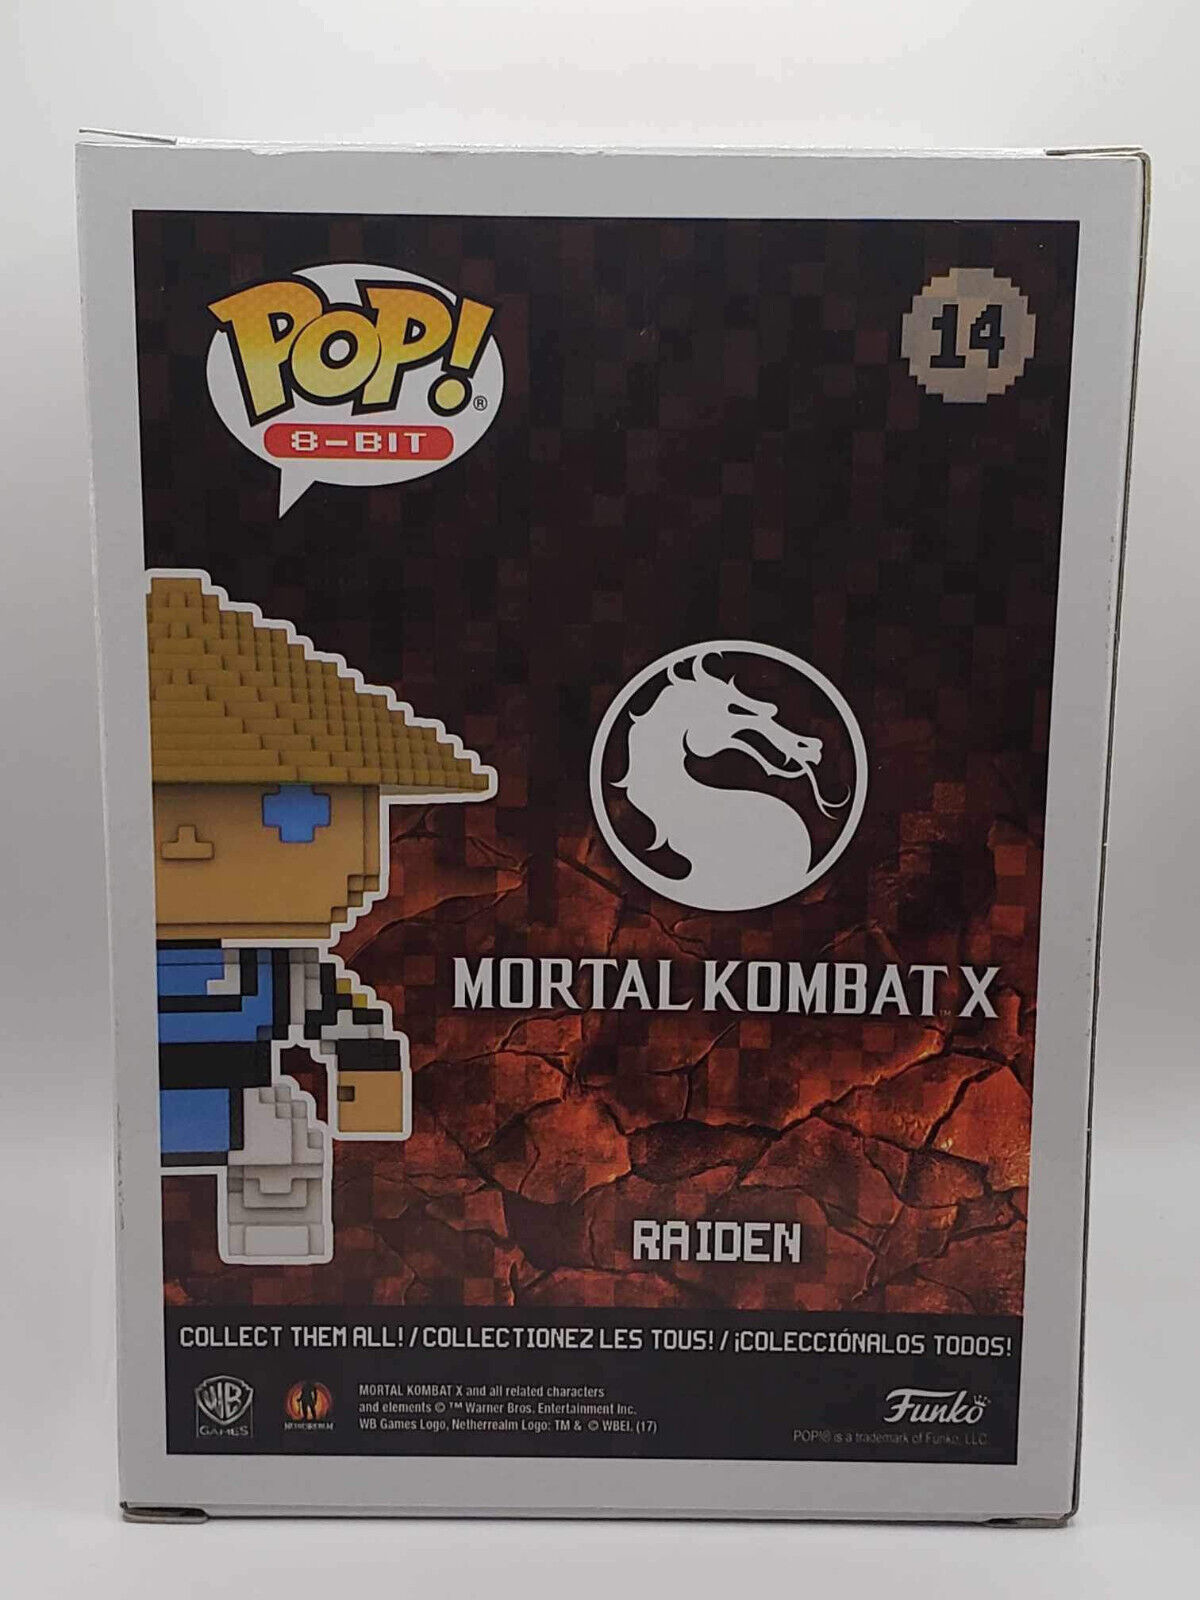 Funko Pop Mortal Kombat X Raiden 14 8 Bit Gamestop Exclusive Vinyl Figure